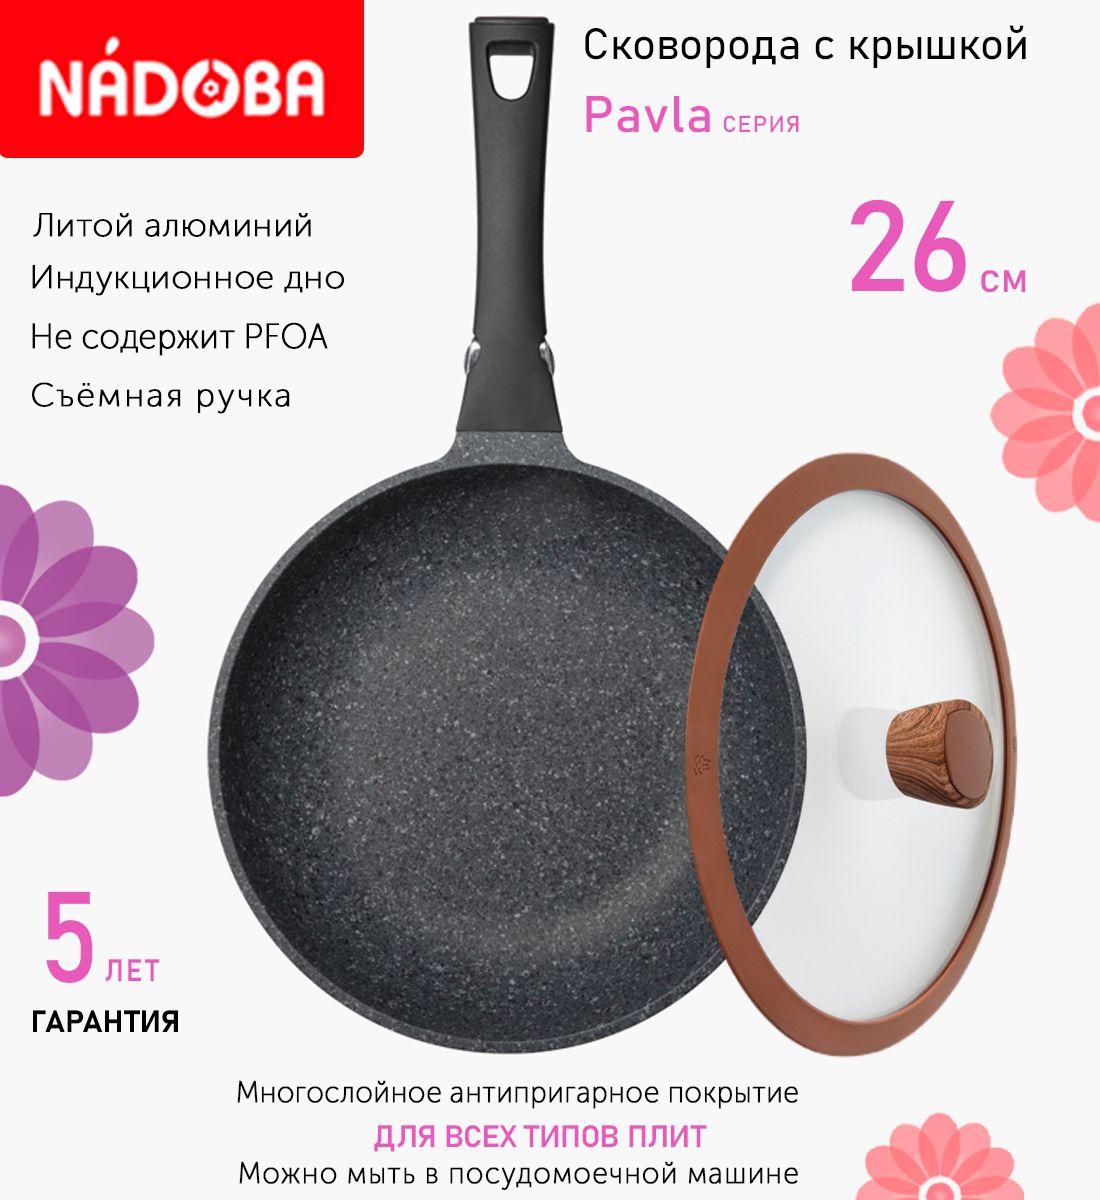 Сковорода с крышкой NADOBA 26 см серия Pavla